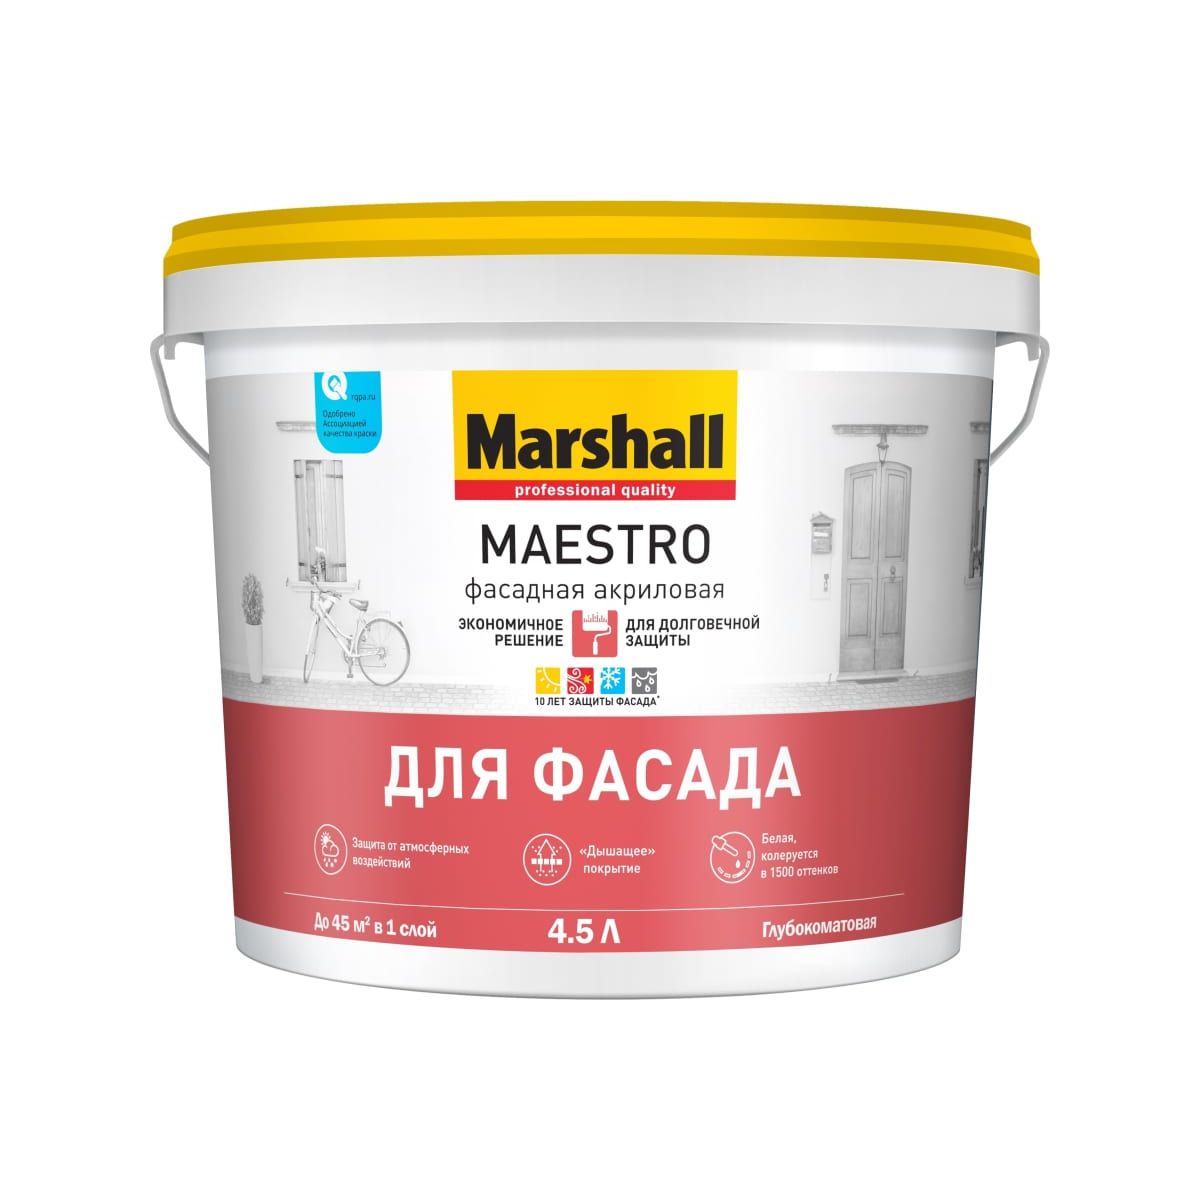 Краска Marshall Maestro фасадная акриловая, глубокоматовая, база BW, 4,5 л